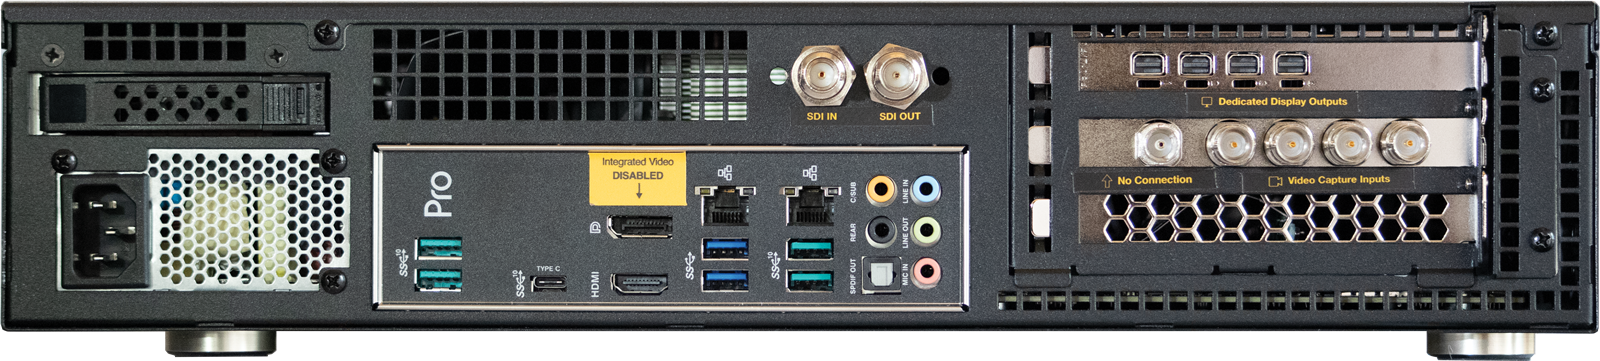 Wirecast gear 3 4k SDI HDMI